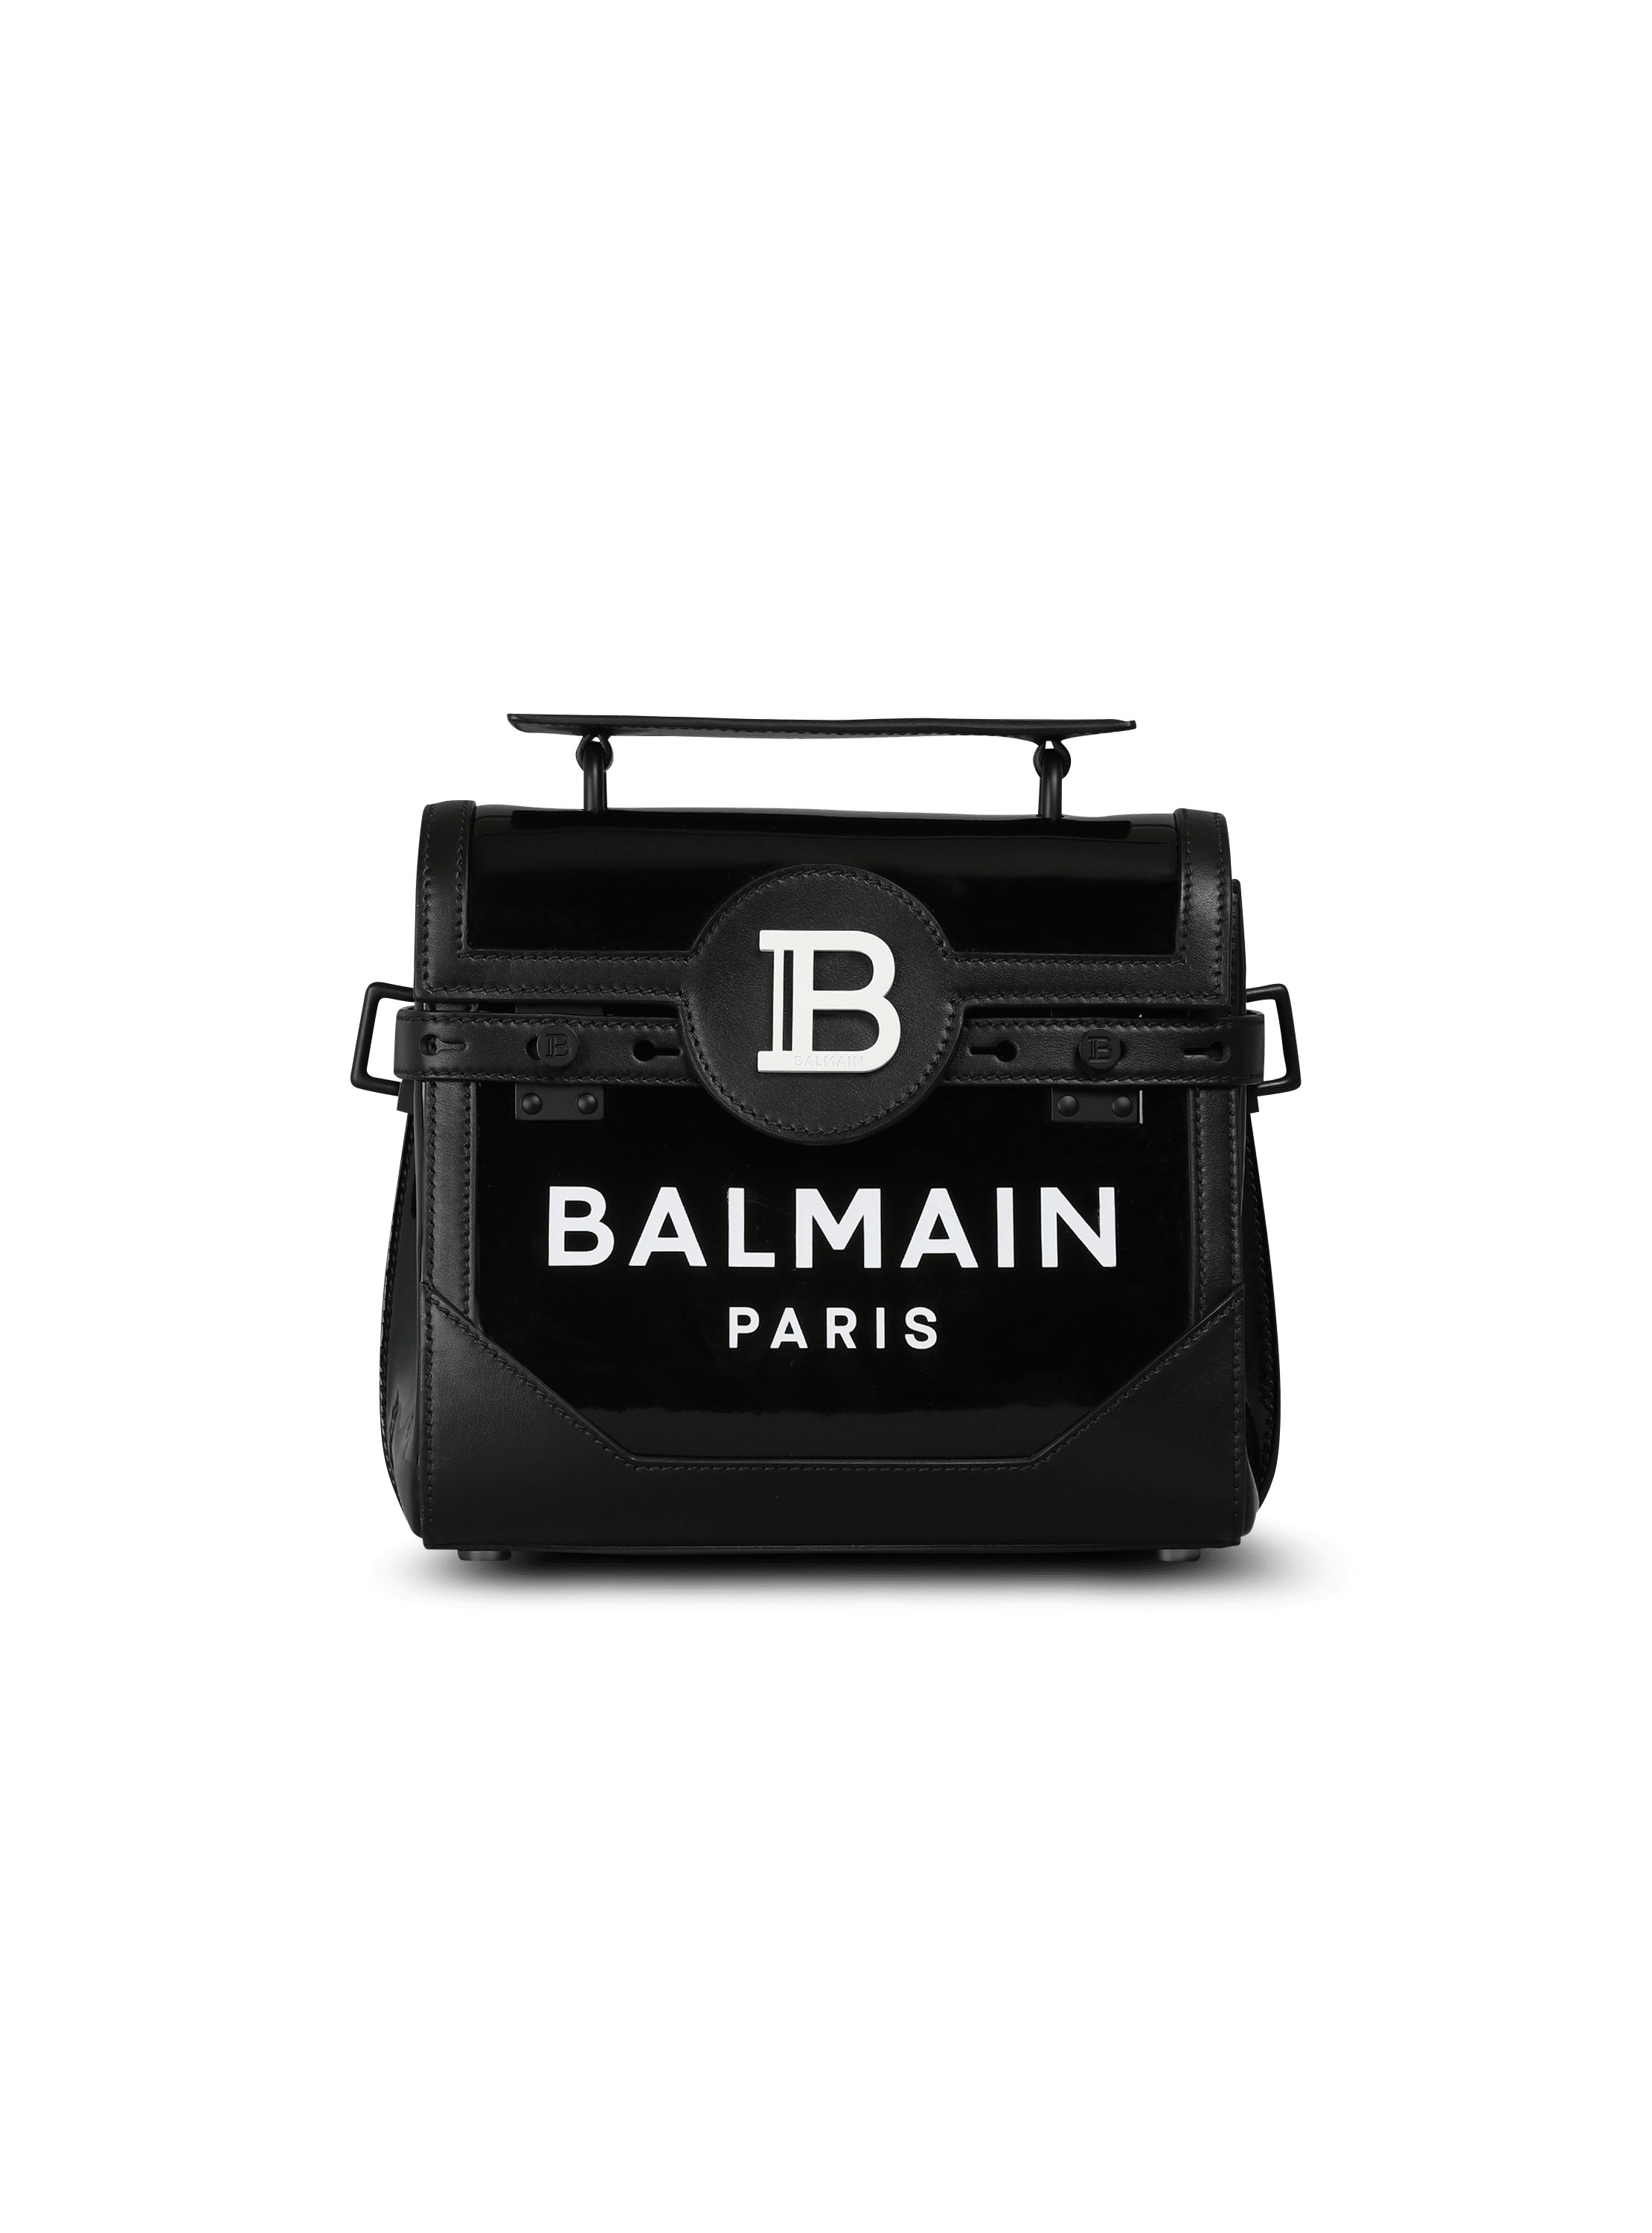 B-Buzz 23 vinyl bag with Balmain Paris logo